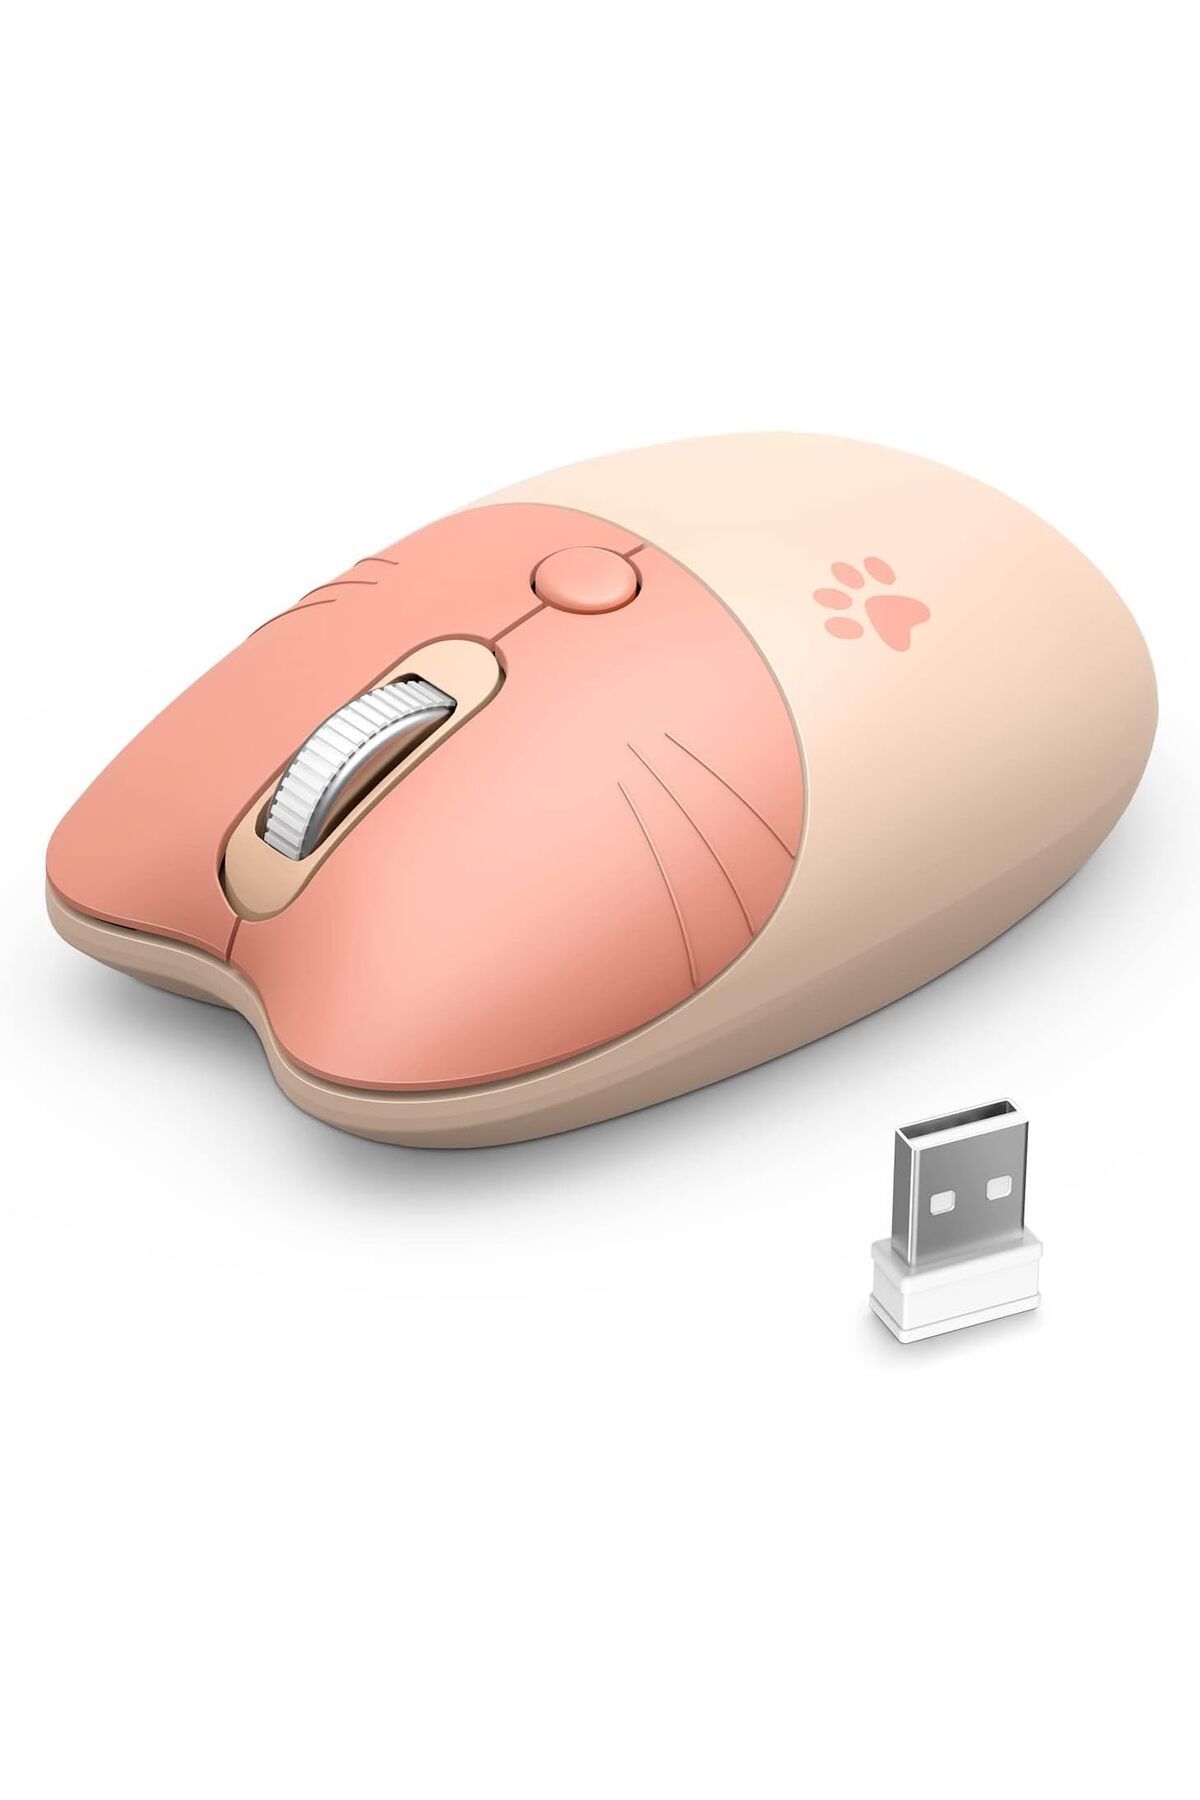 Coverzone Mofii Wireless Mouse Kedi Tasarım Kablosuz Bilgisayar Notebook Usb Receiver Tak Çalıştır Pilli Fare